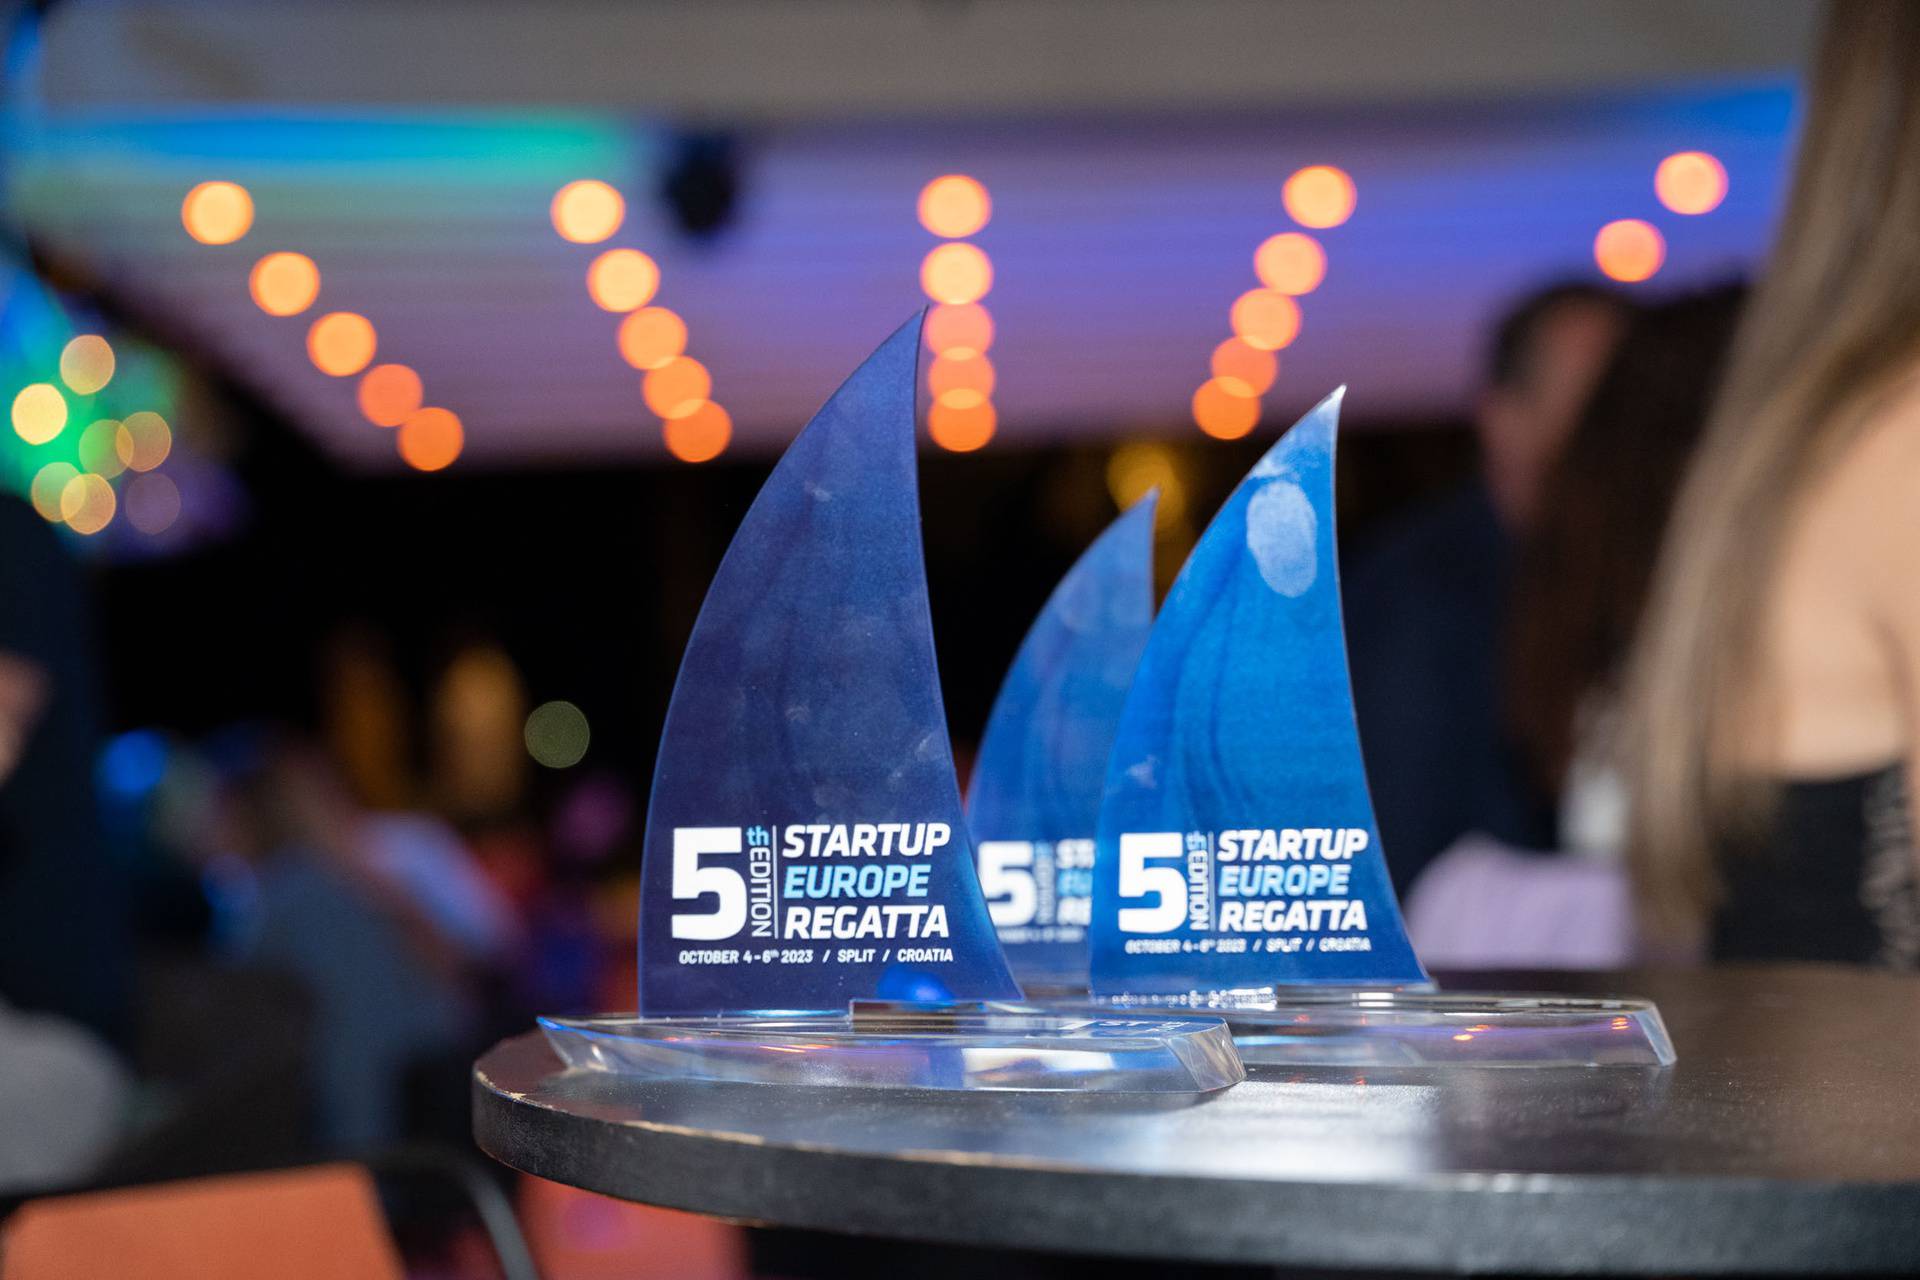 Startup Europe Regatta: Više od jedrenja, simbol novih početaka